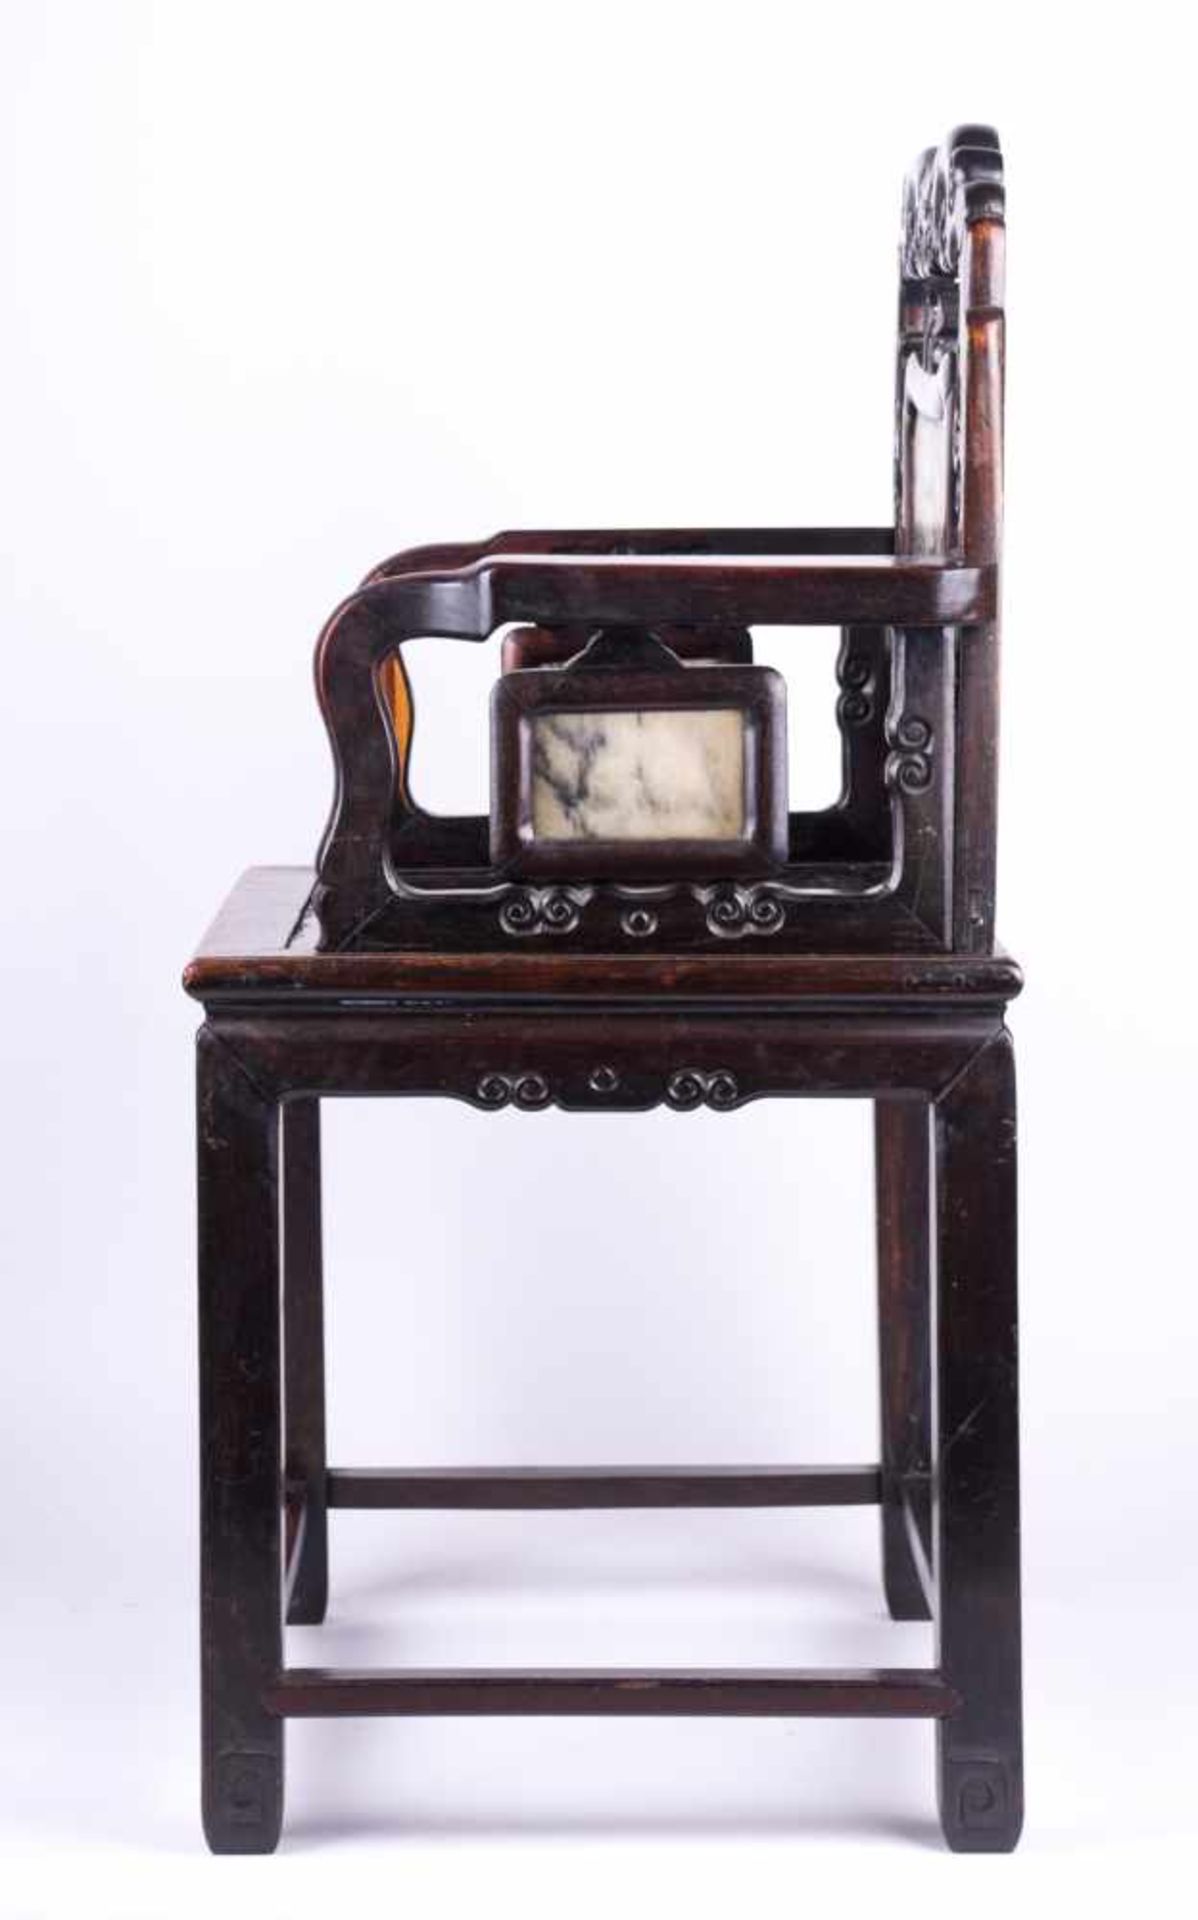 Stuhl China 19. Jhd. / Chair, China 19th century schweres Holz, in Arm- und Rückenlehne sind - Bild 3 aus 4